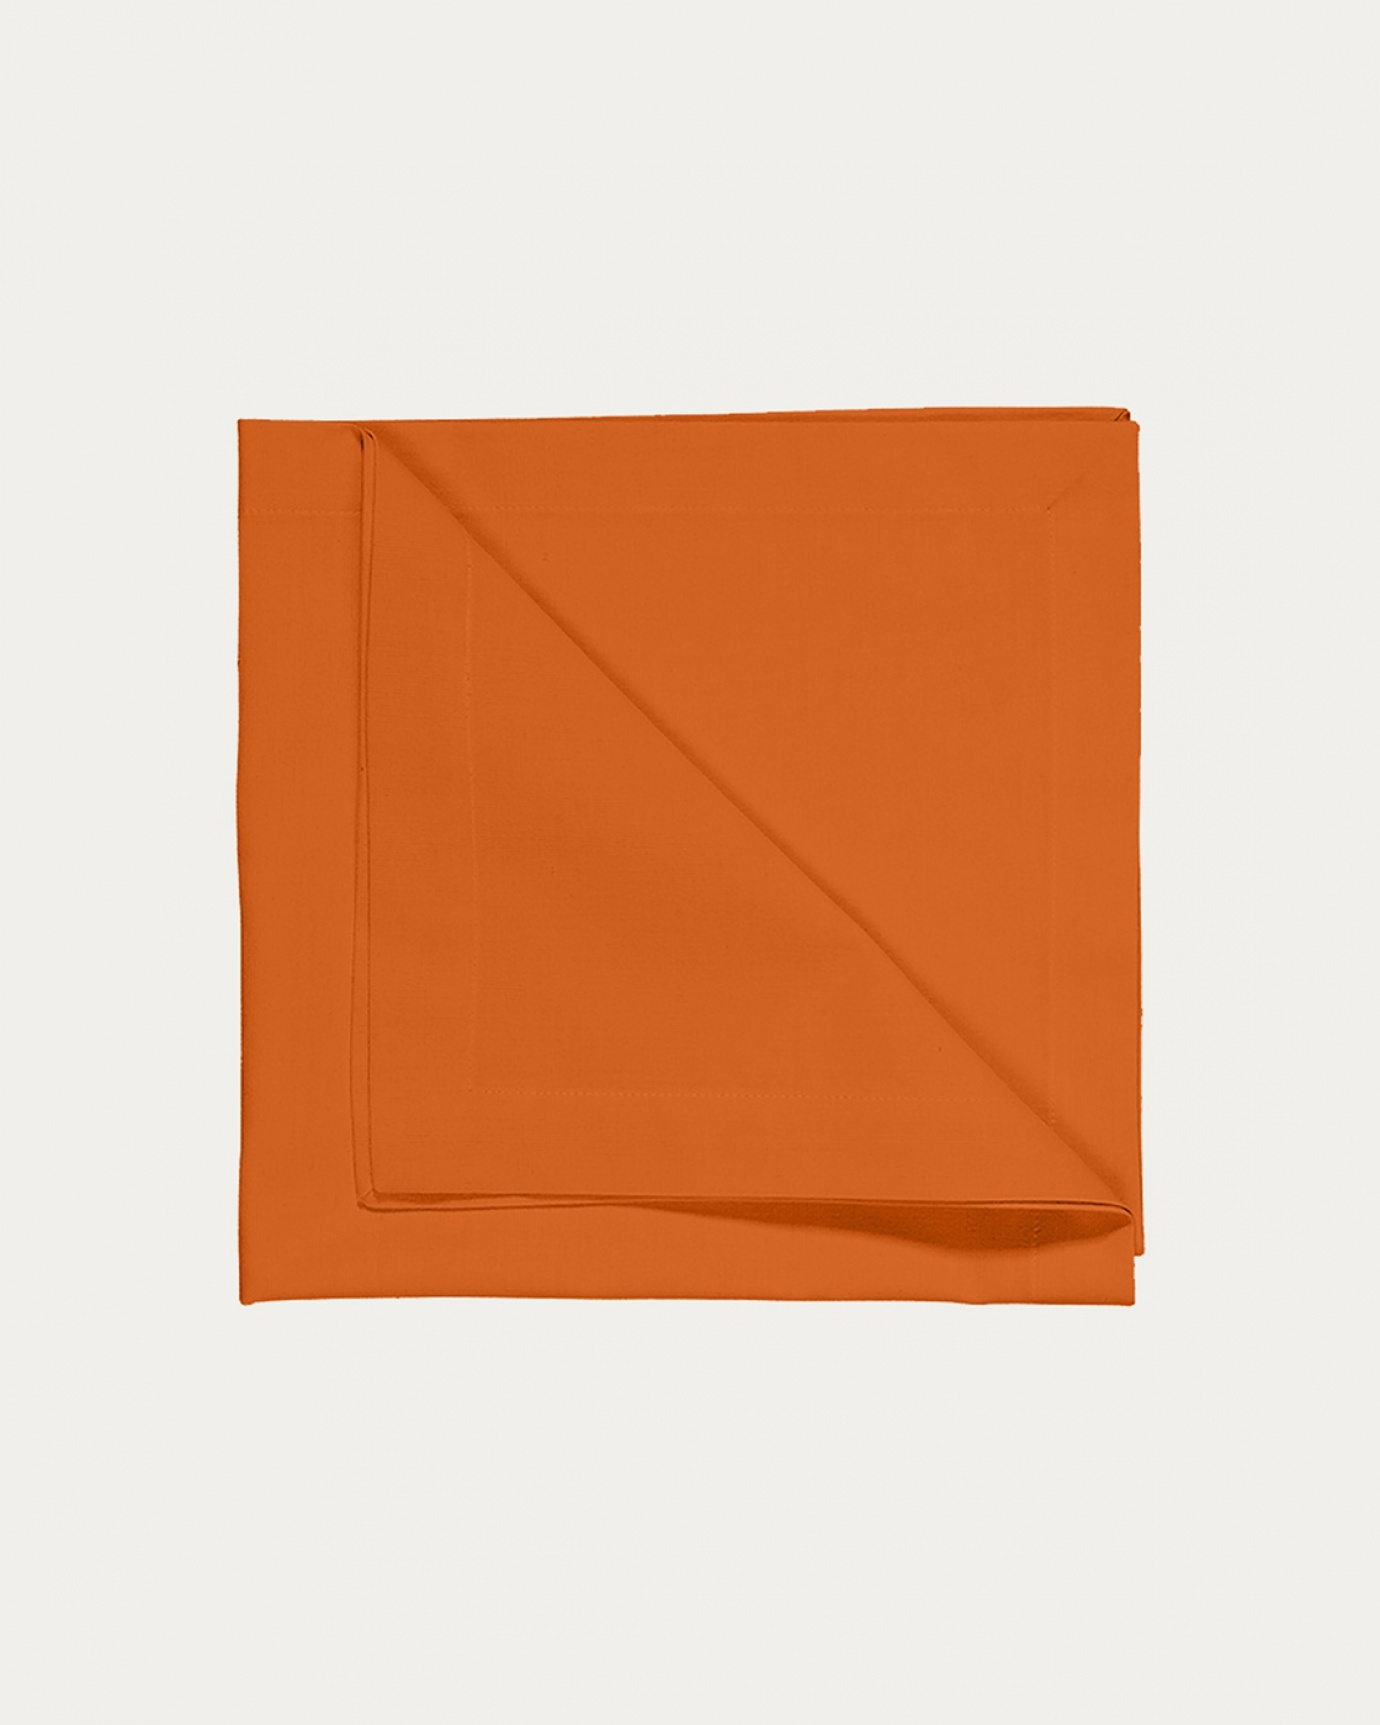 Immagine prodotto orange ROBERT tovagliolo in morbido cotone di LINUM DESIGN. Dimensioni 45x45 cm e venduto in 4-pezzi.